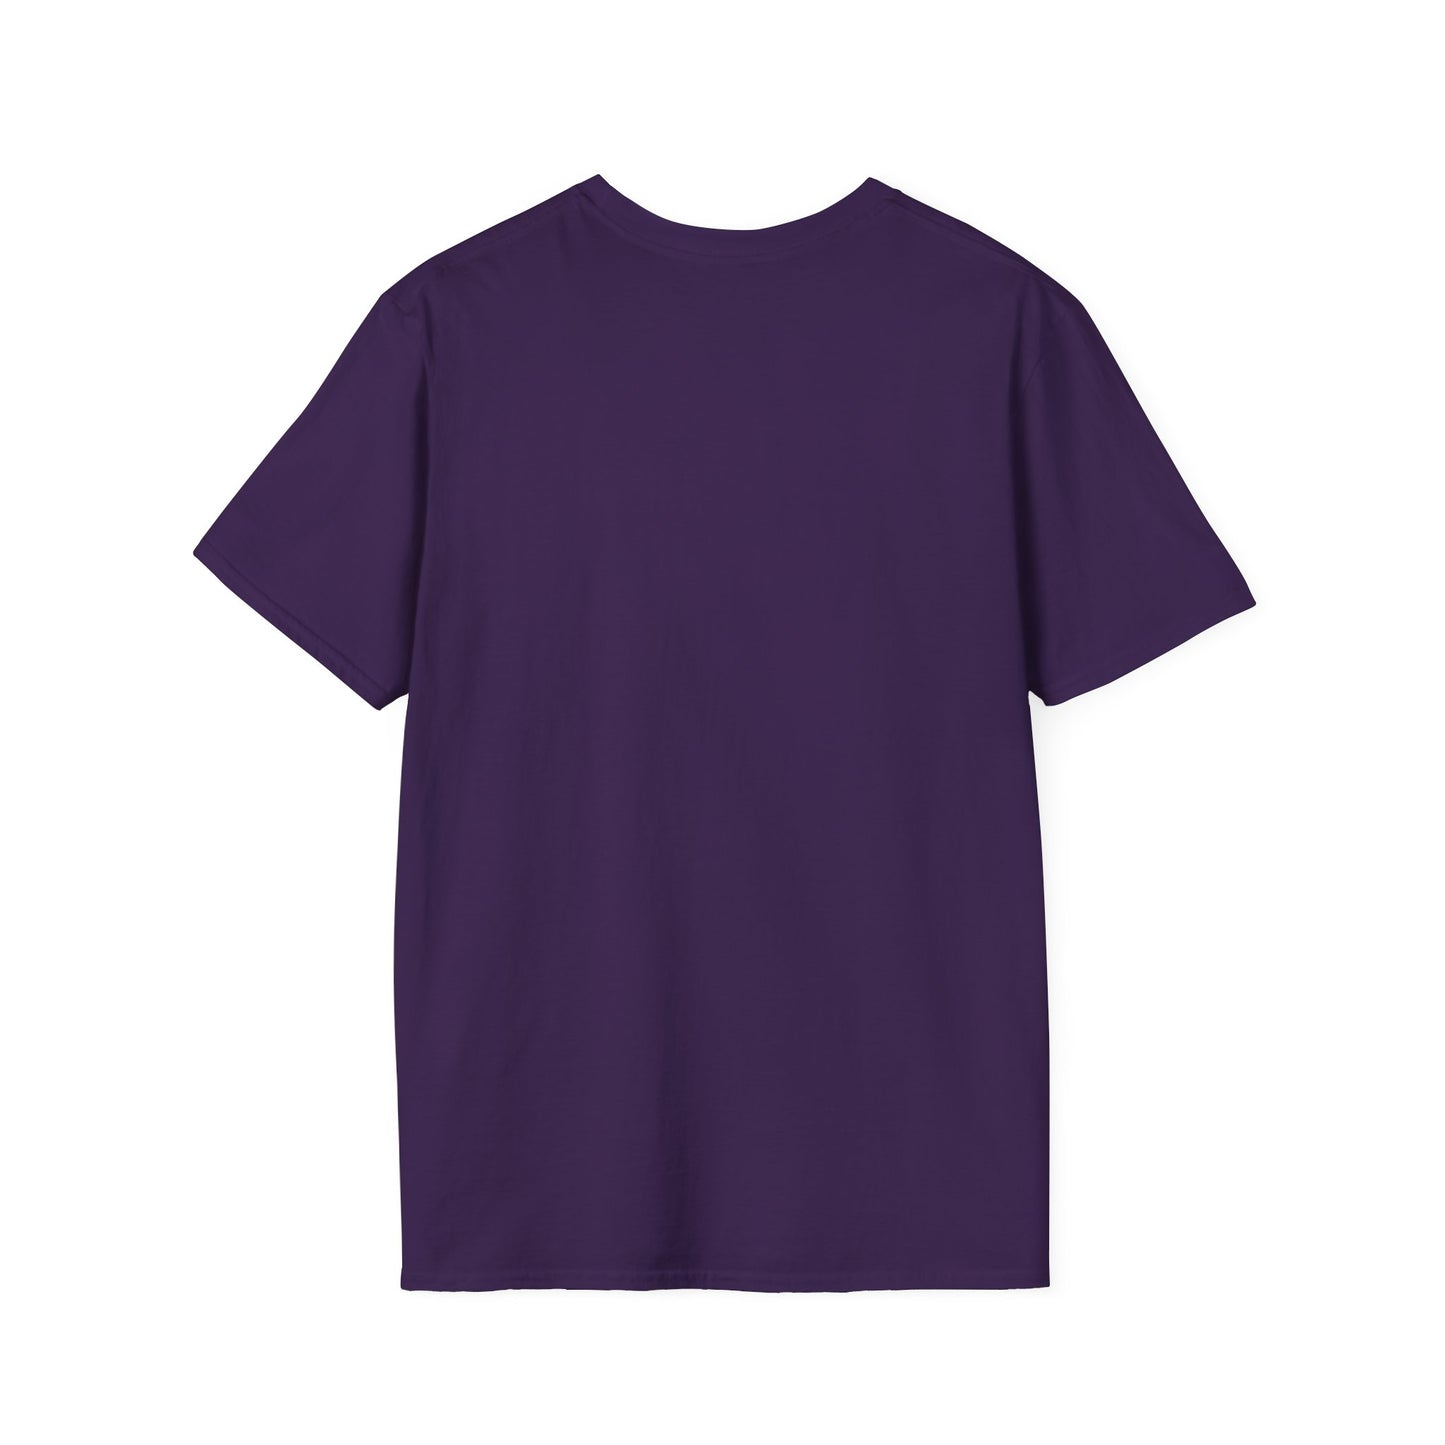 100% Cotton Unisex T-Shirt